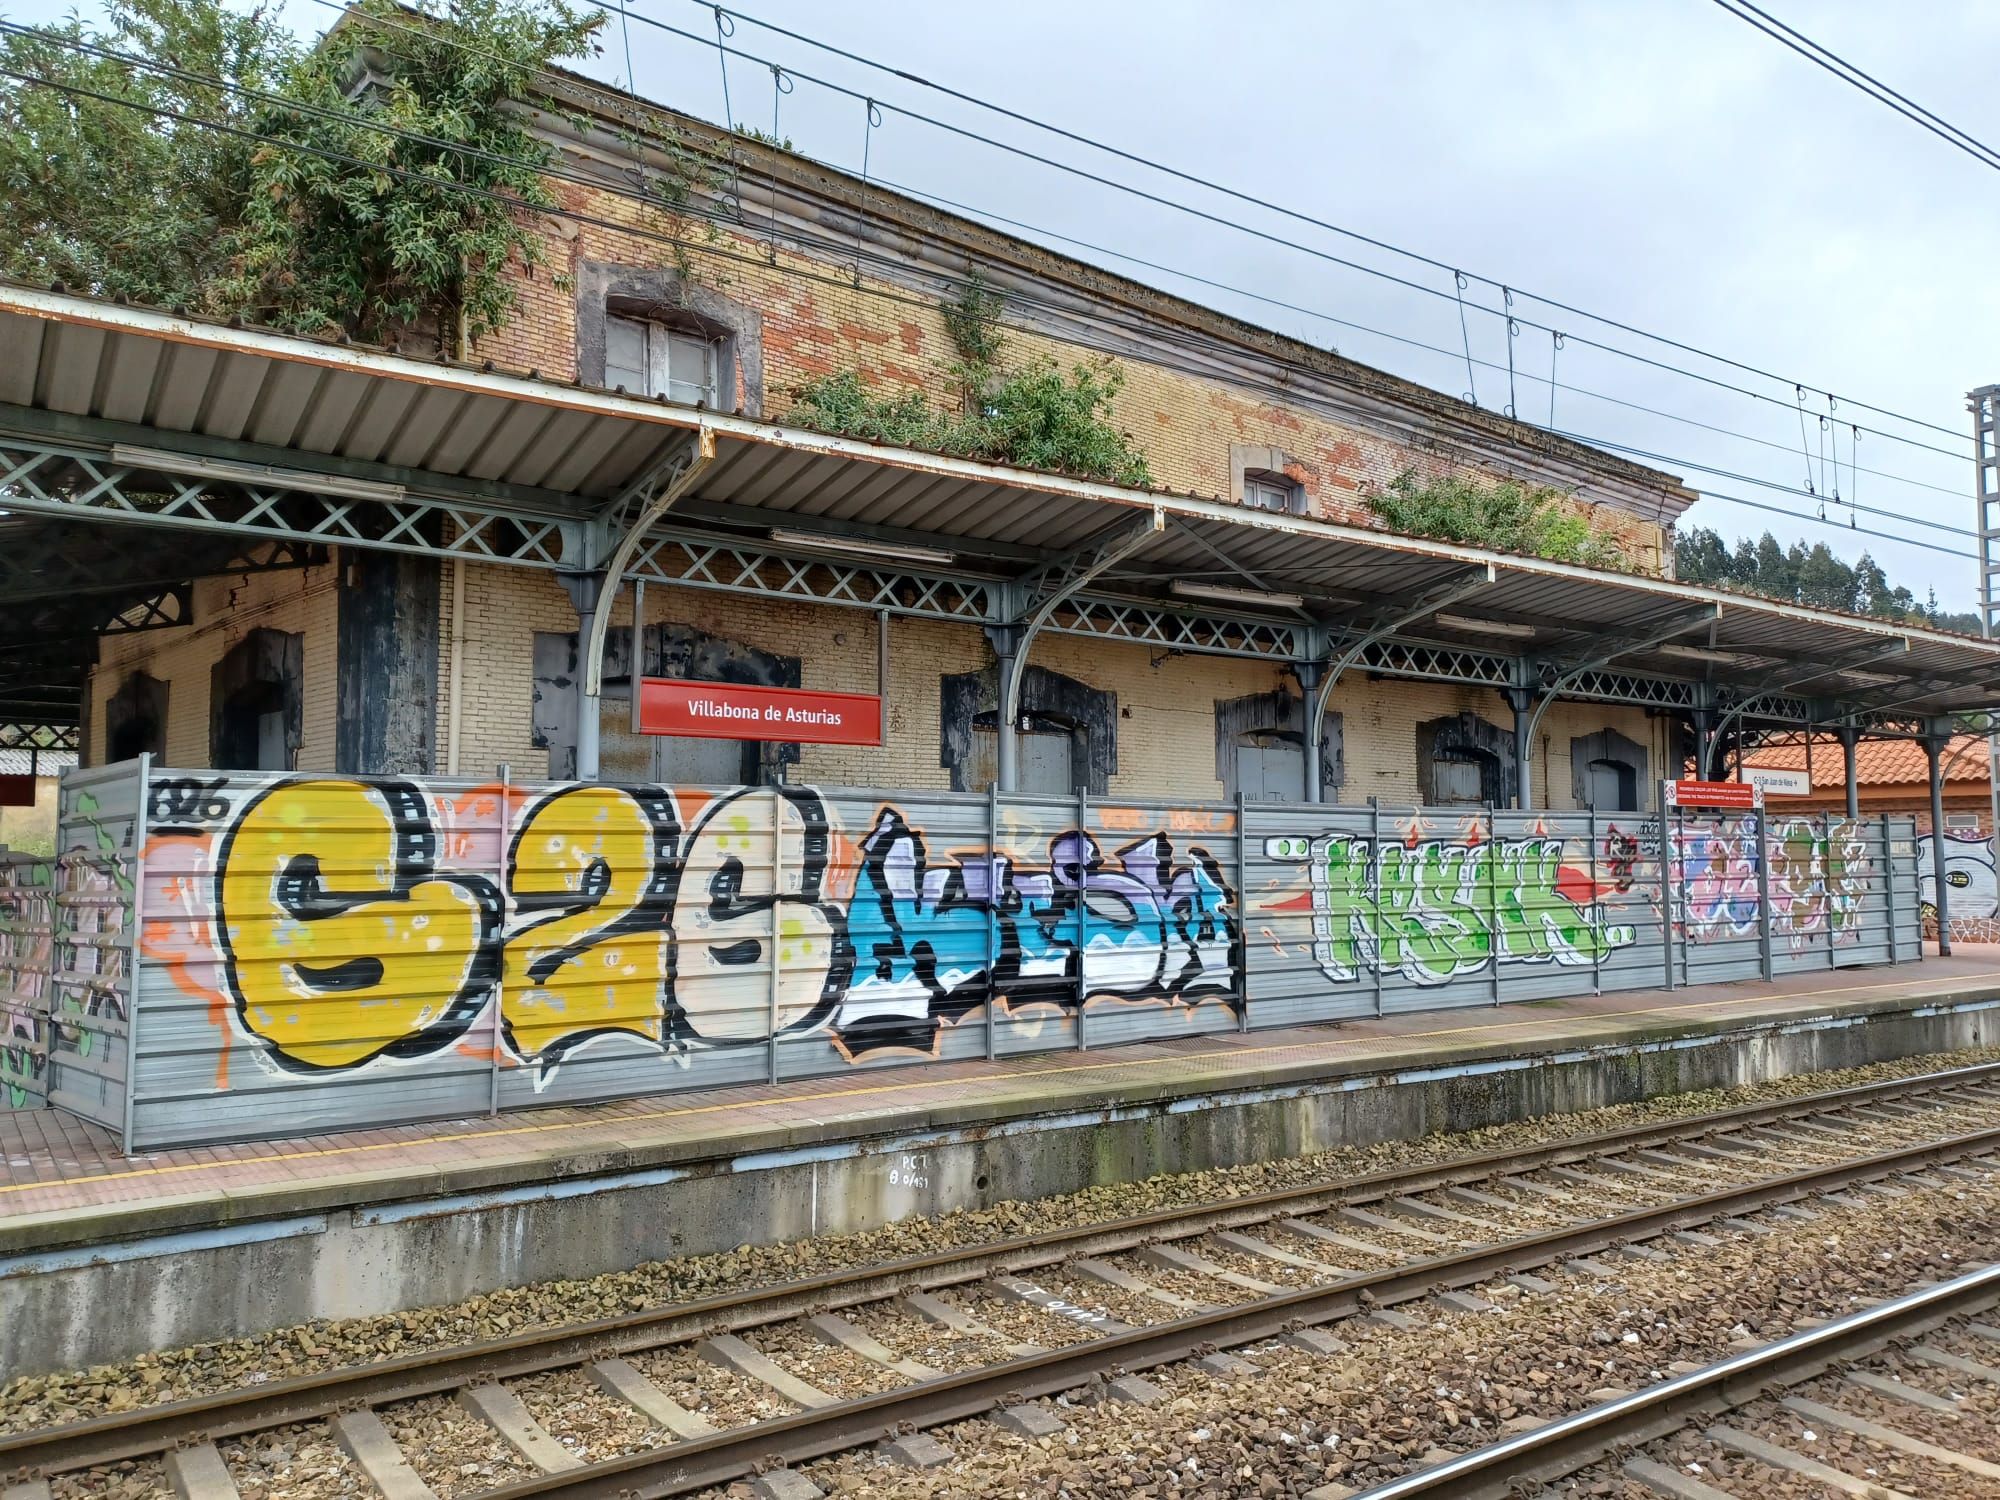 La estación "inglesa" de Villabona, única en Asturias, sigue su imparable deterioro: así es el singular conjunto ferroviario de Llanera